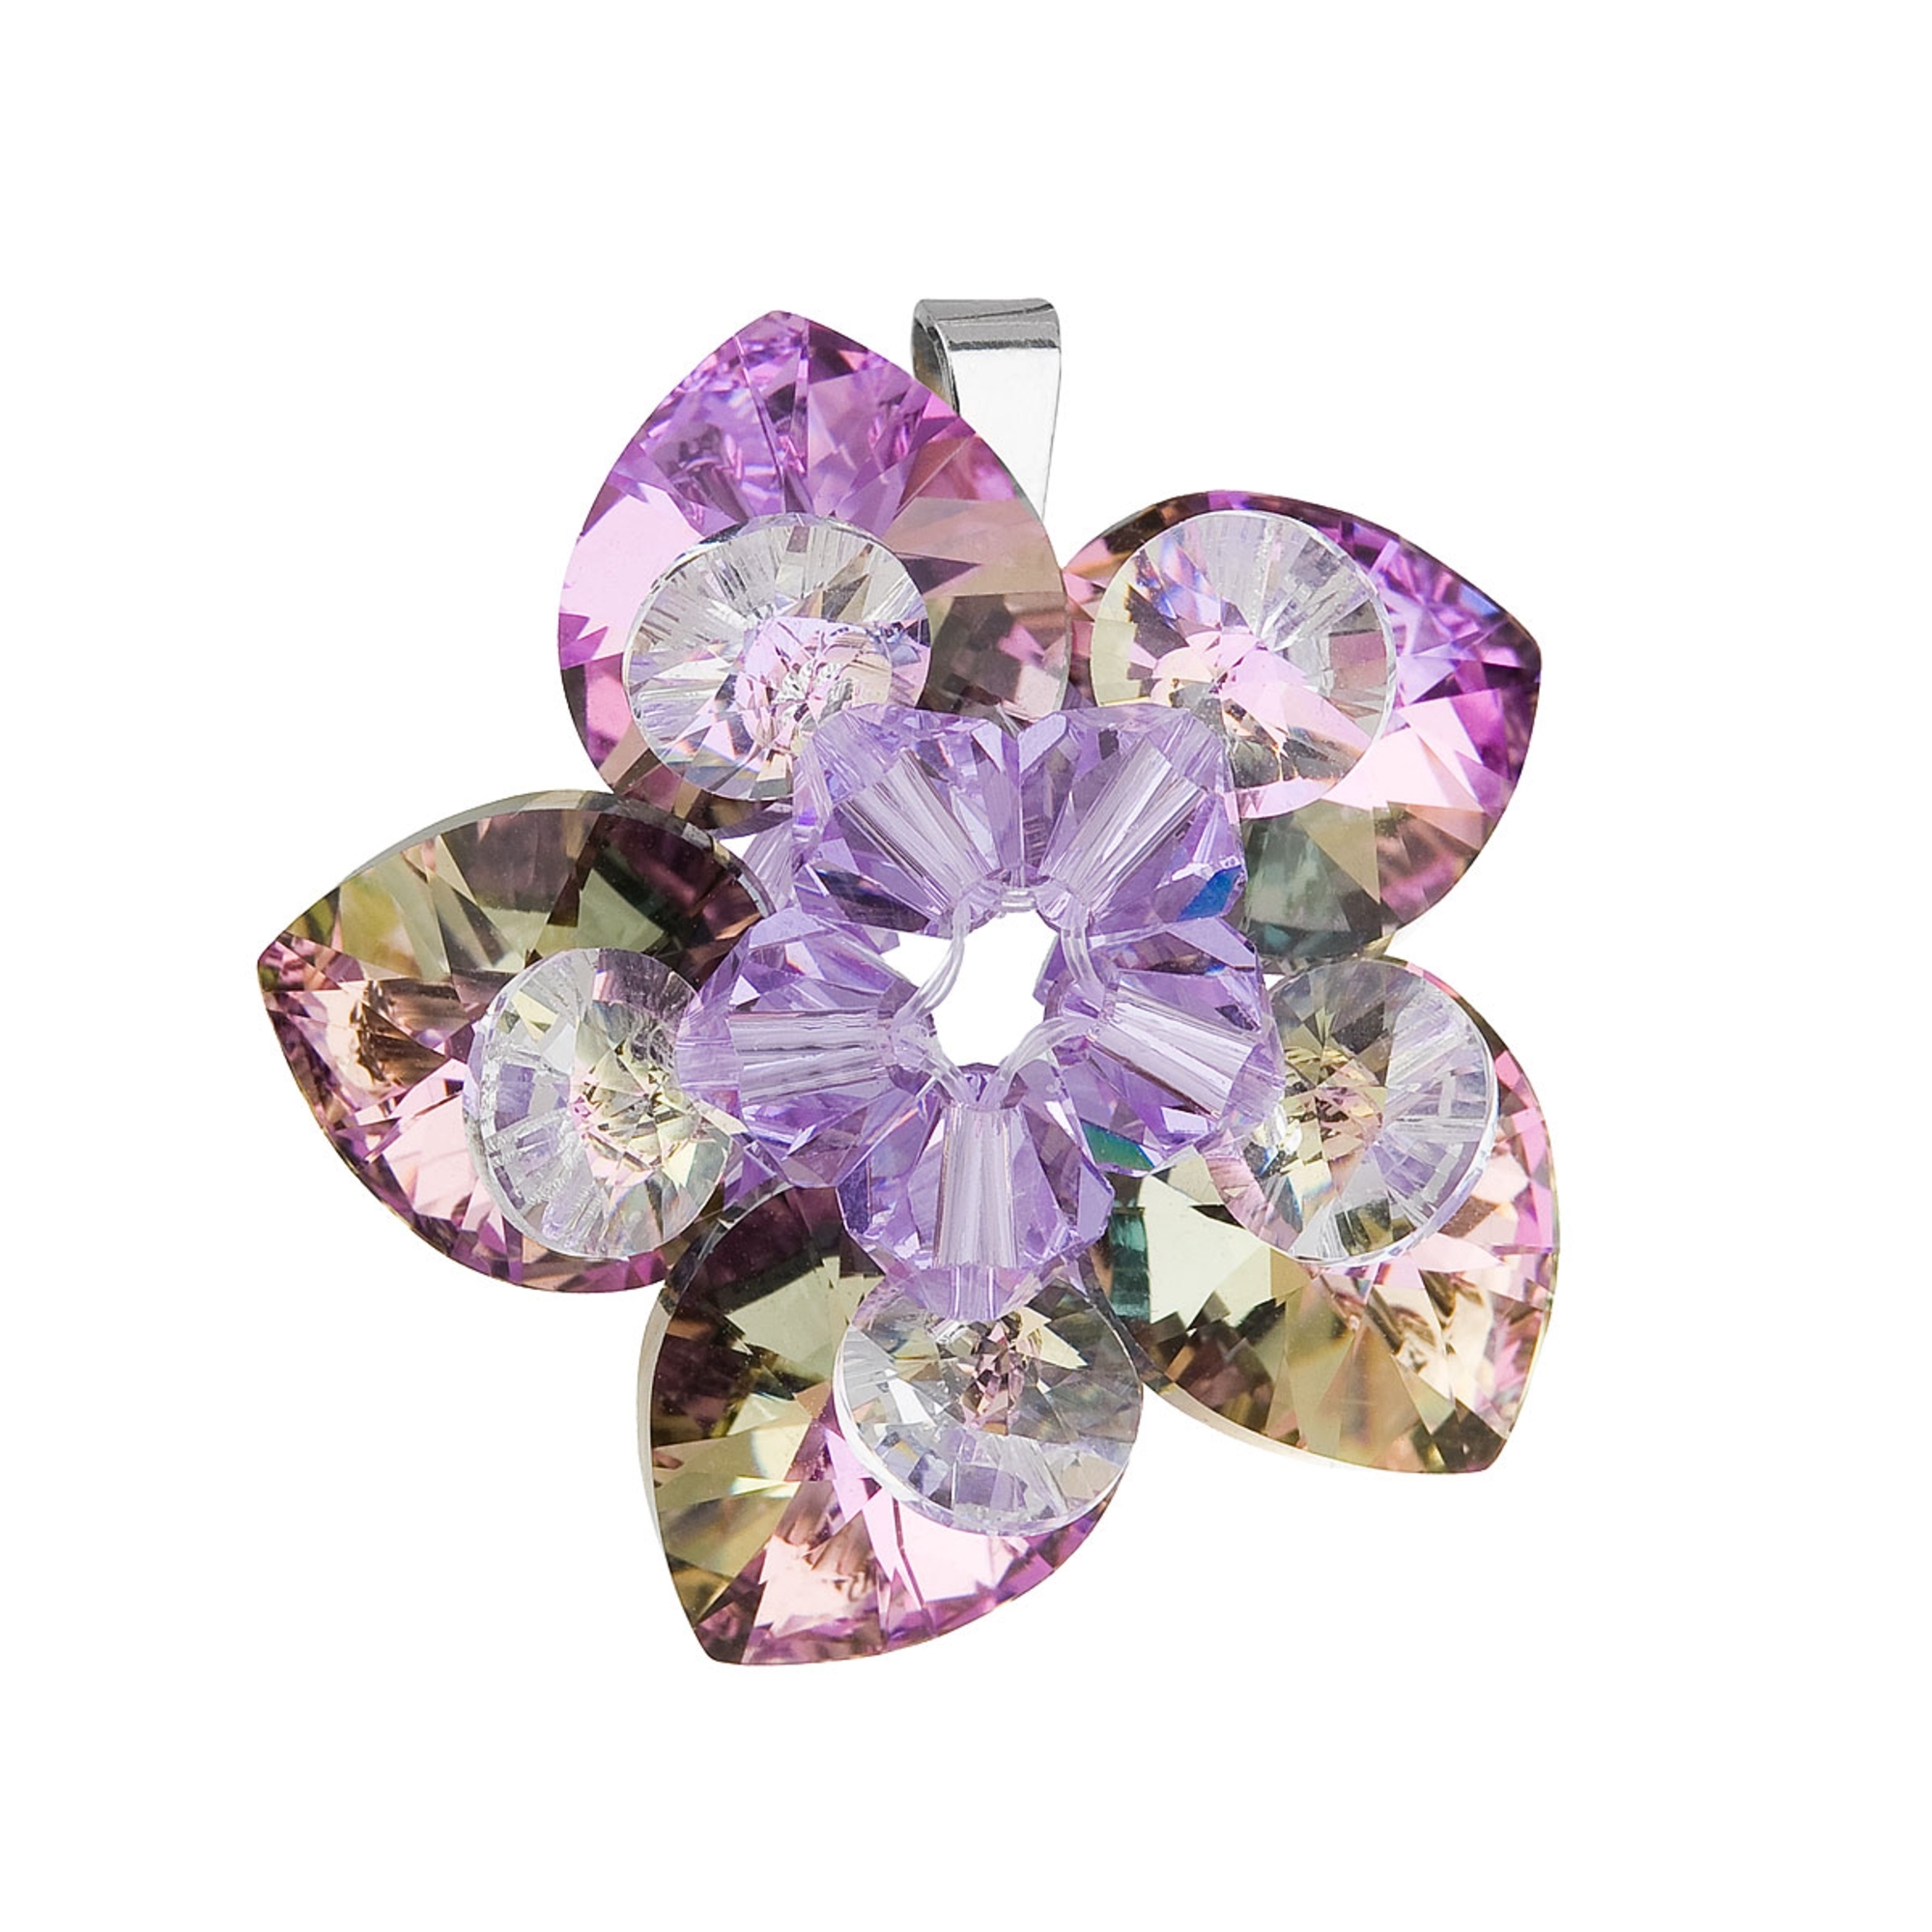 Strieborný prívesok s kvetina s kamienkami Crystals from Swarovski ® Light Vitrail